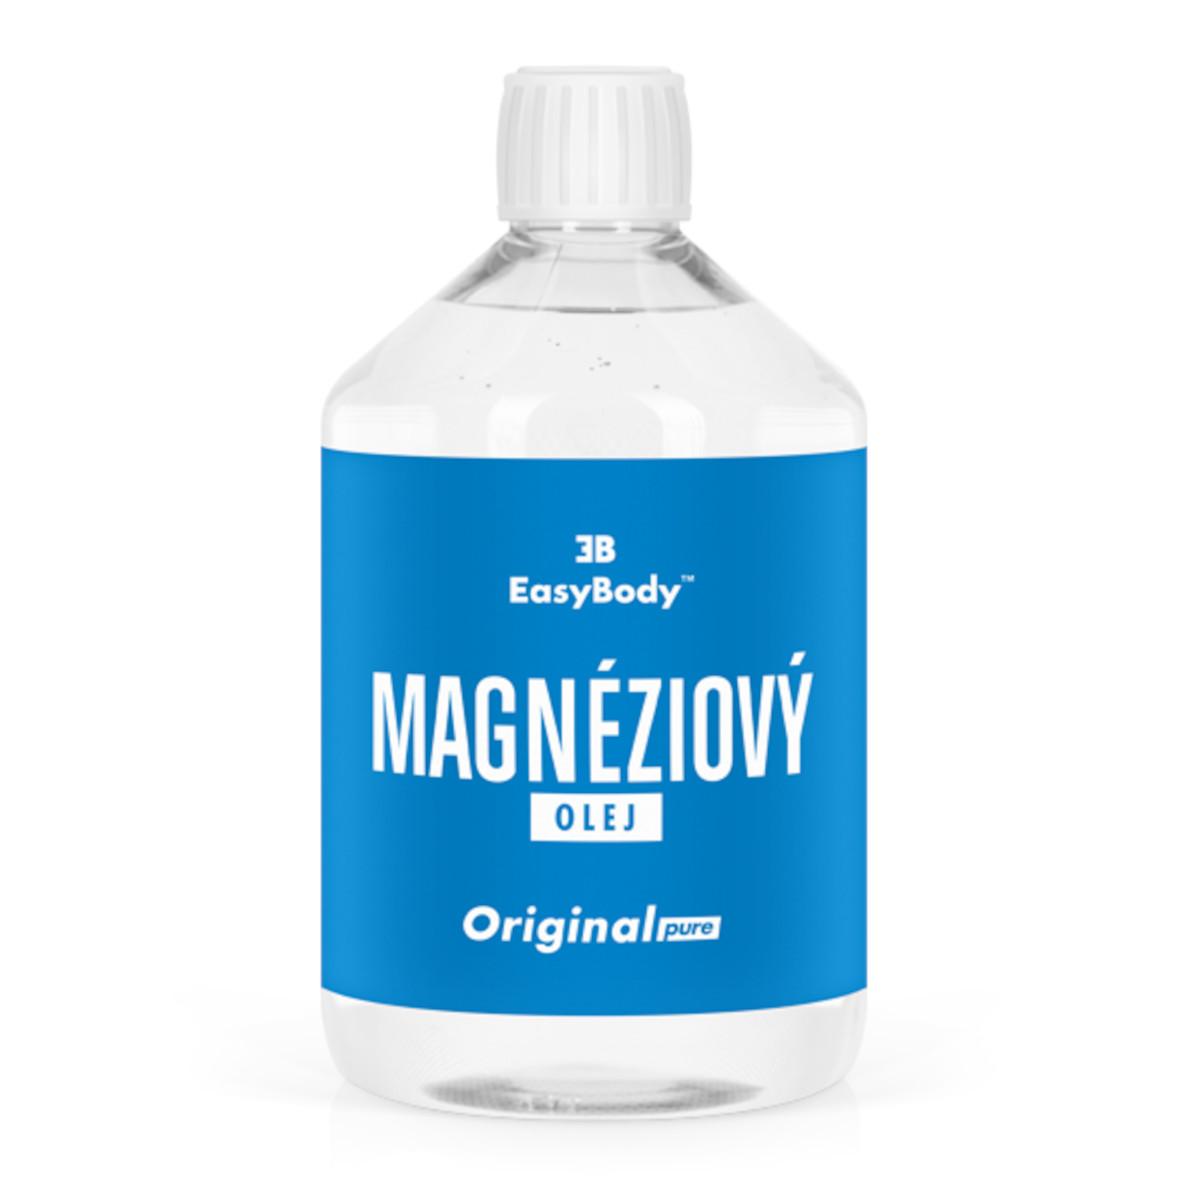 EasyBody Magnéziový olej Original 500 ml